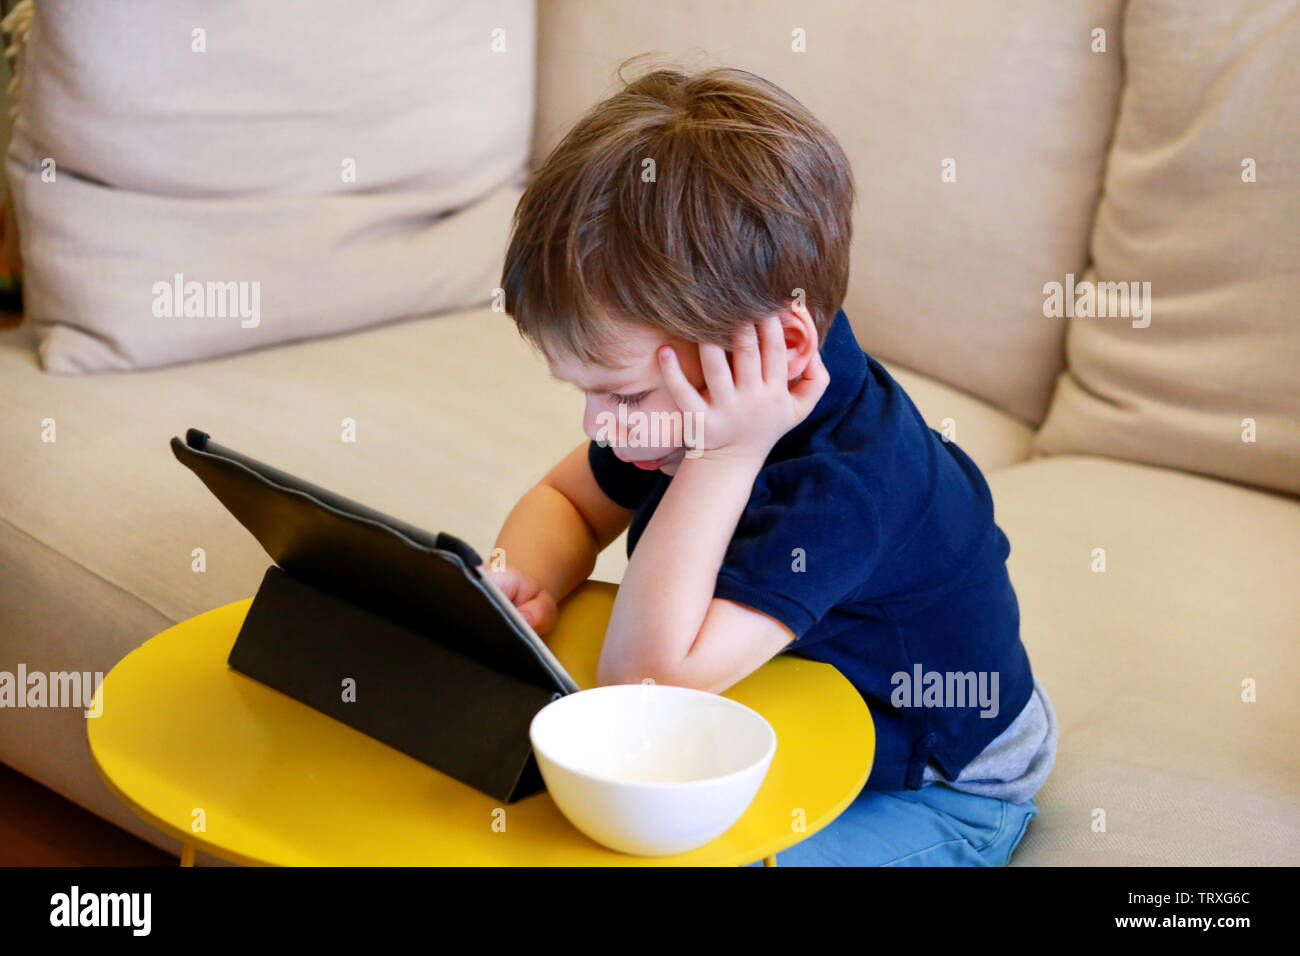 Kind mit Tablet-PC auf Bett zu Hause. Süße junge auf Sofa schaut Cartoons, Spiele spielen und lernen vom Laptop. Bildung, Spaß, Freizeit, das Glück. Stockfoto